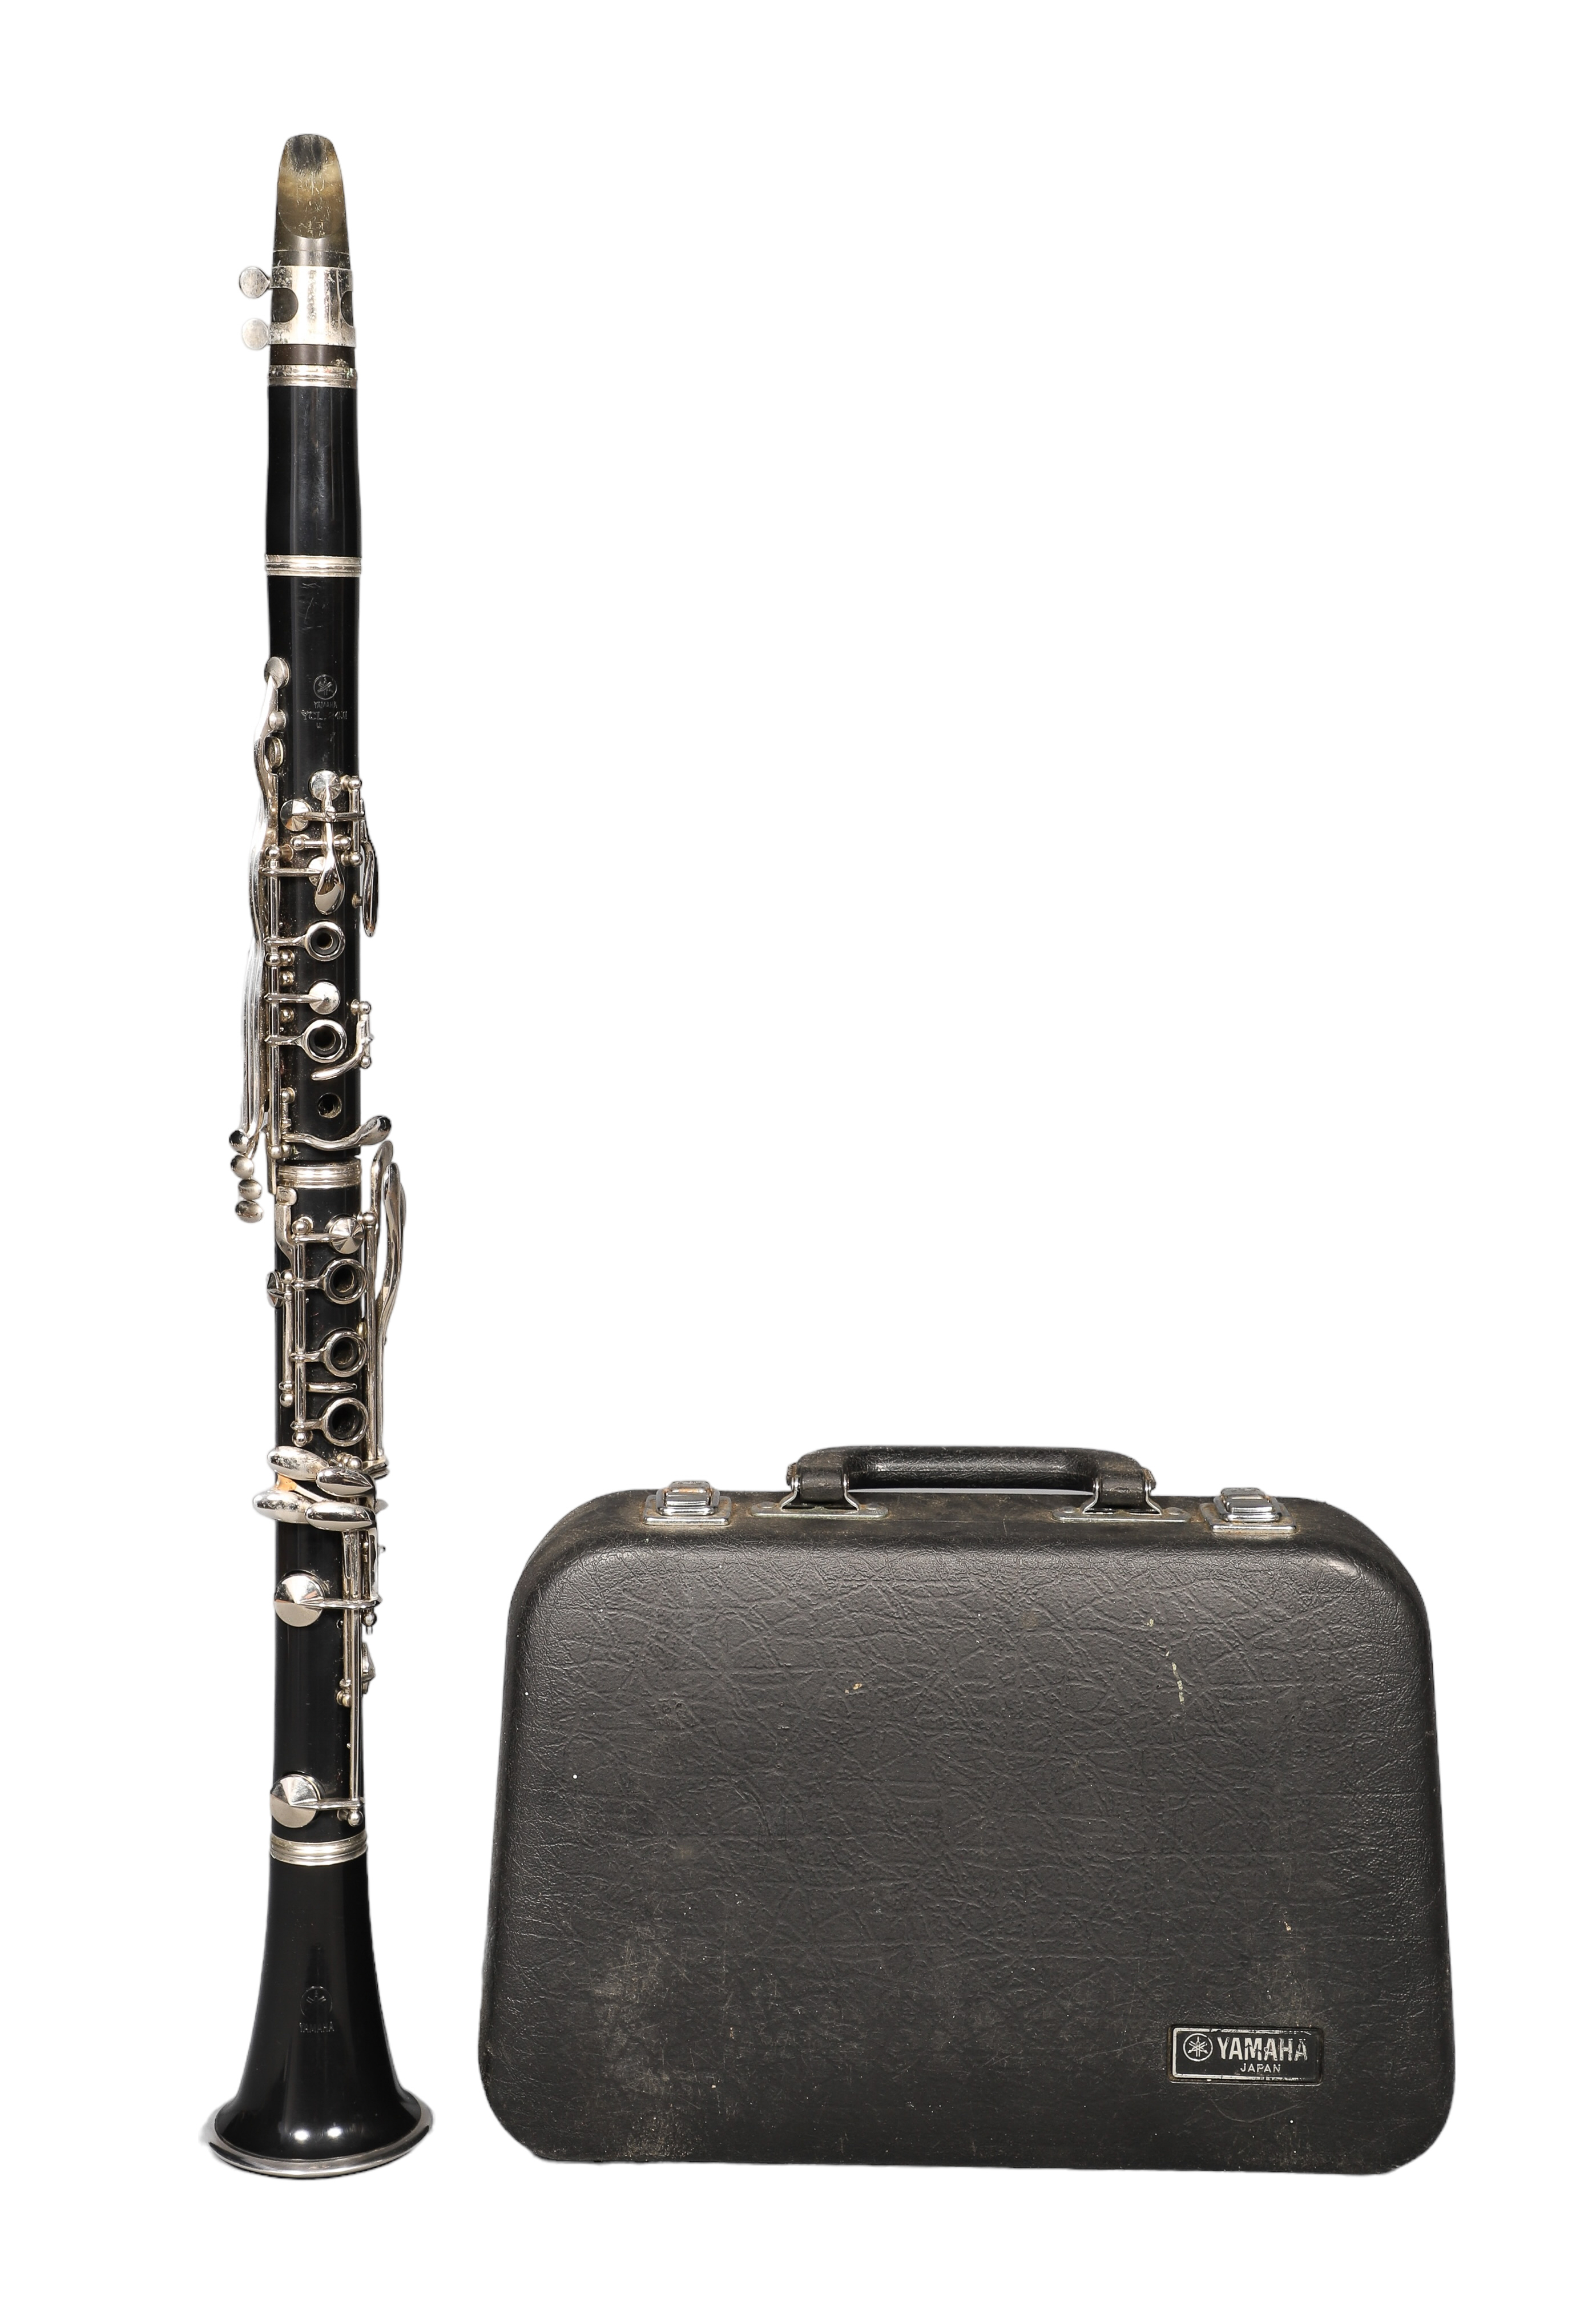 Yamaha YCL 24II clarinet, serial #18967,